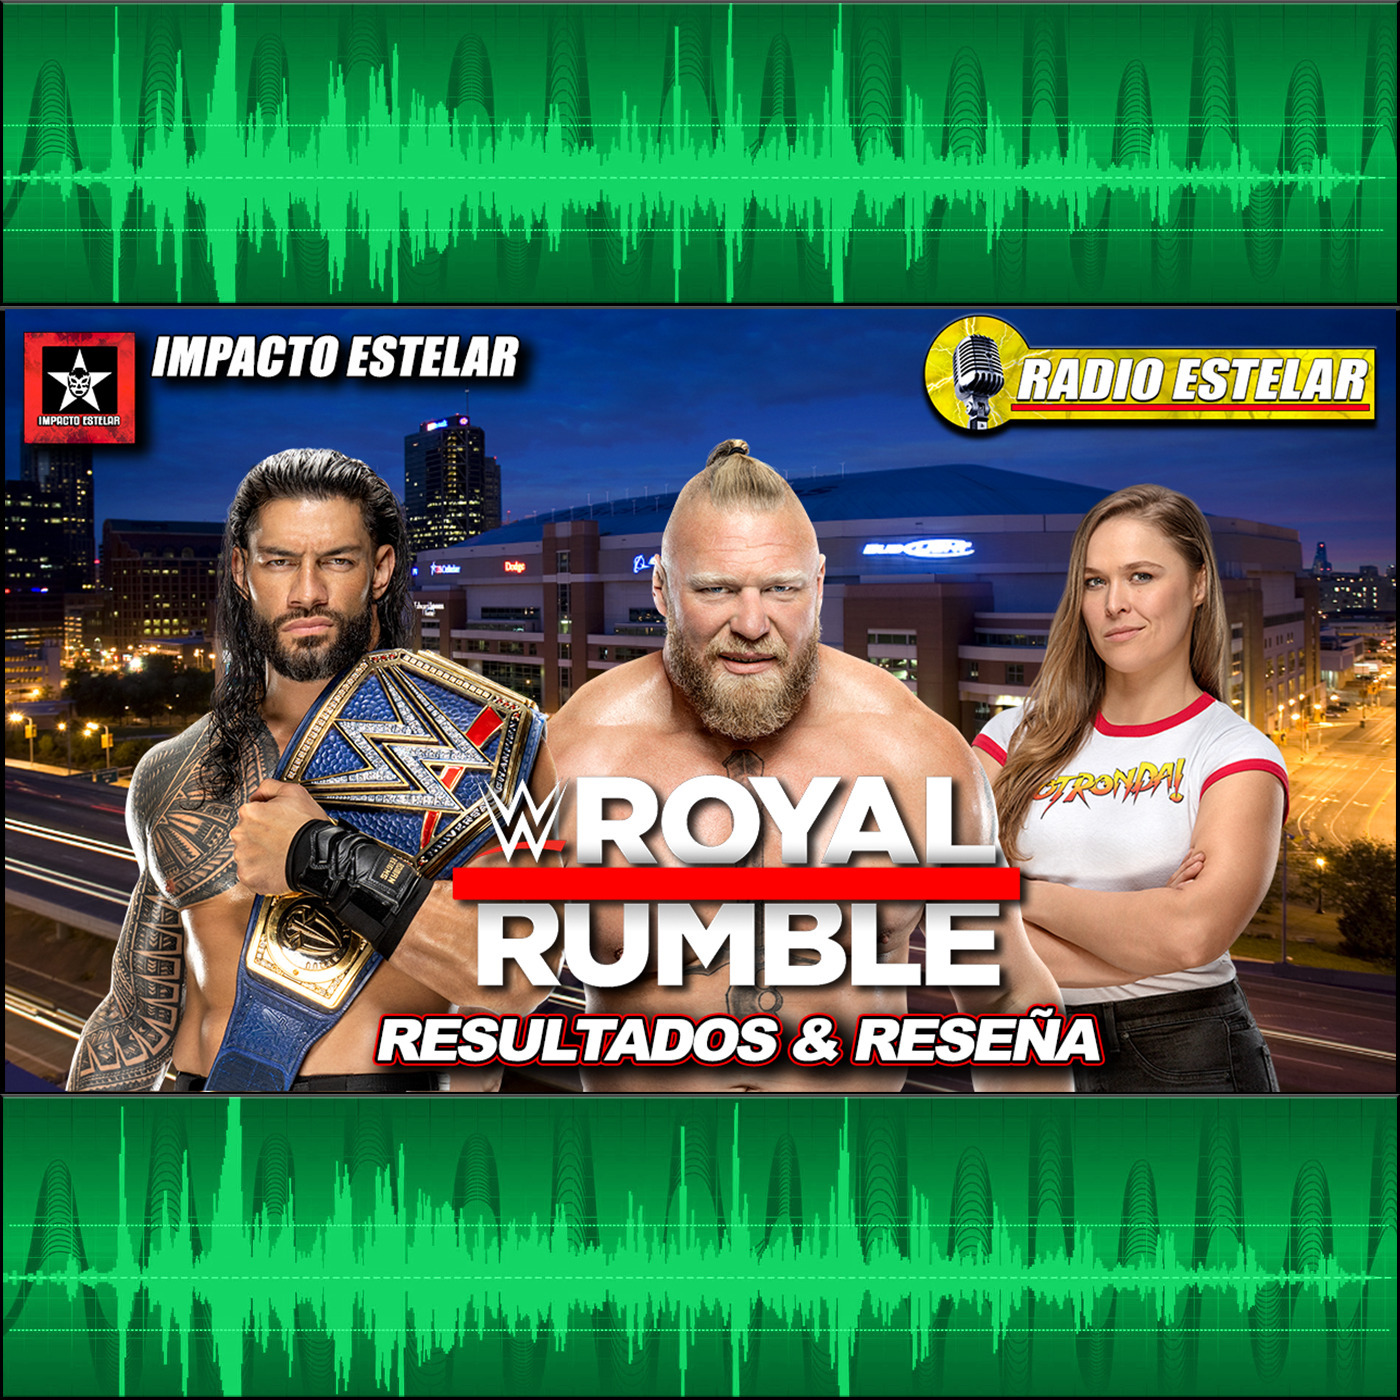 Resultados & Reseña del Royal Rumble | Radio Estelar 01/30/22